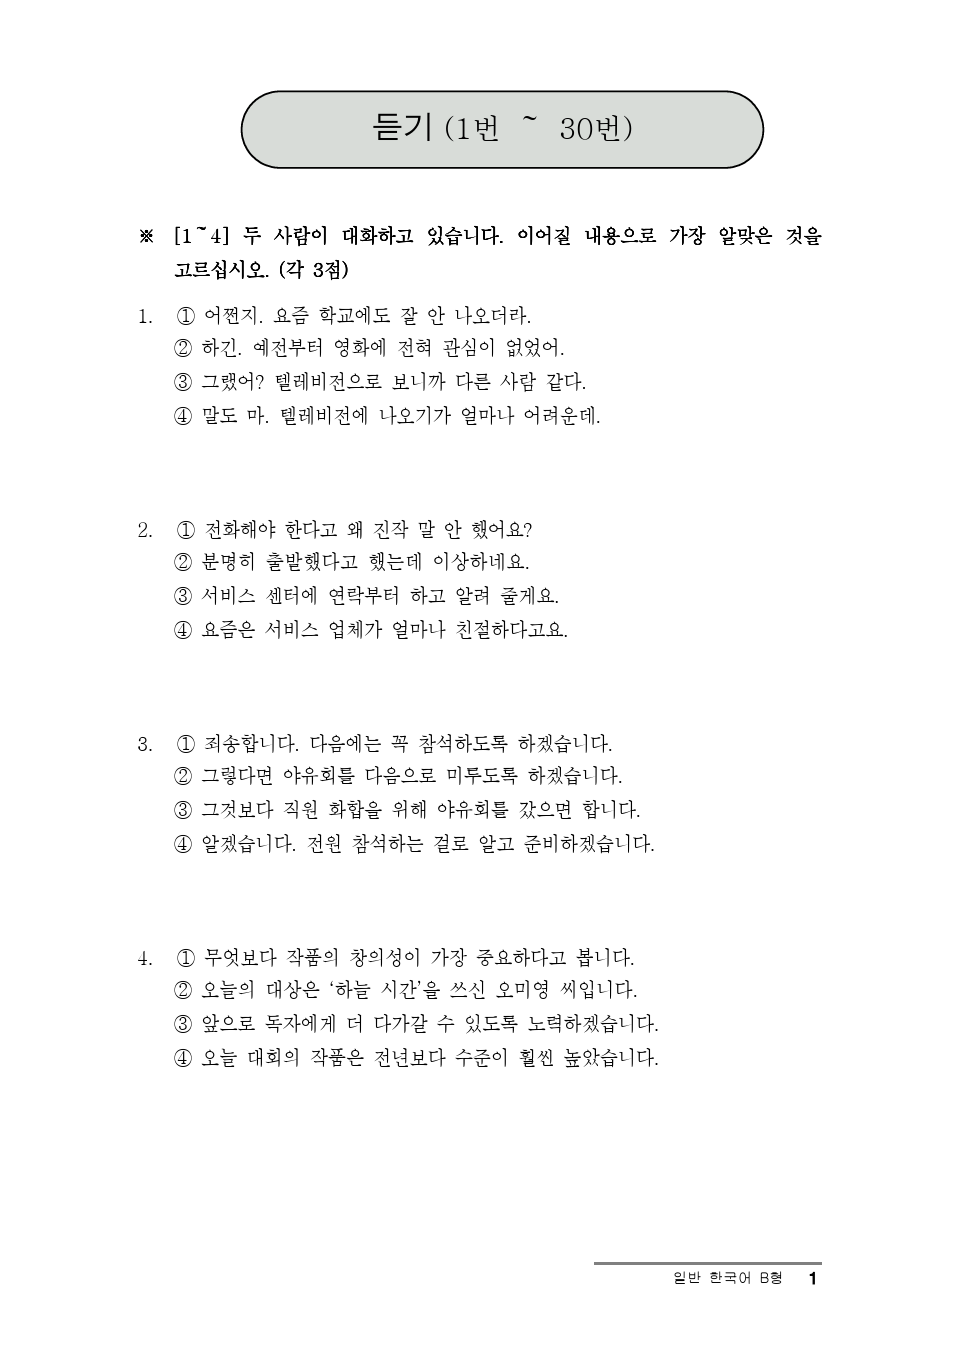 第14届韩国语能力考试topik真题高级2卷B型